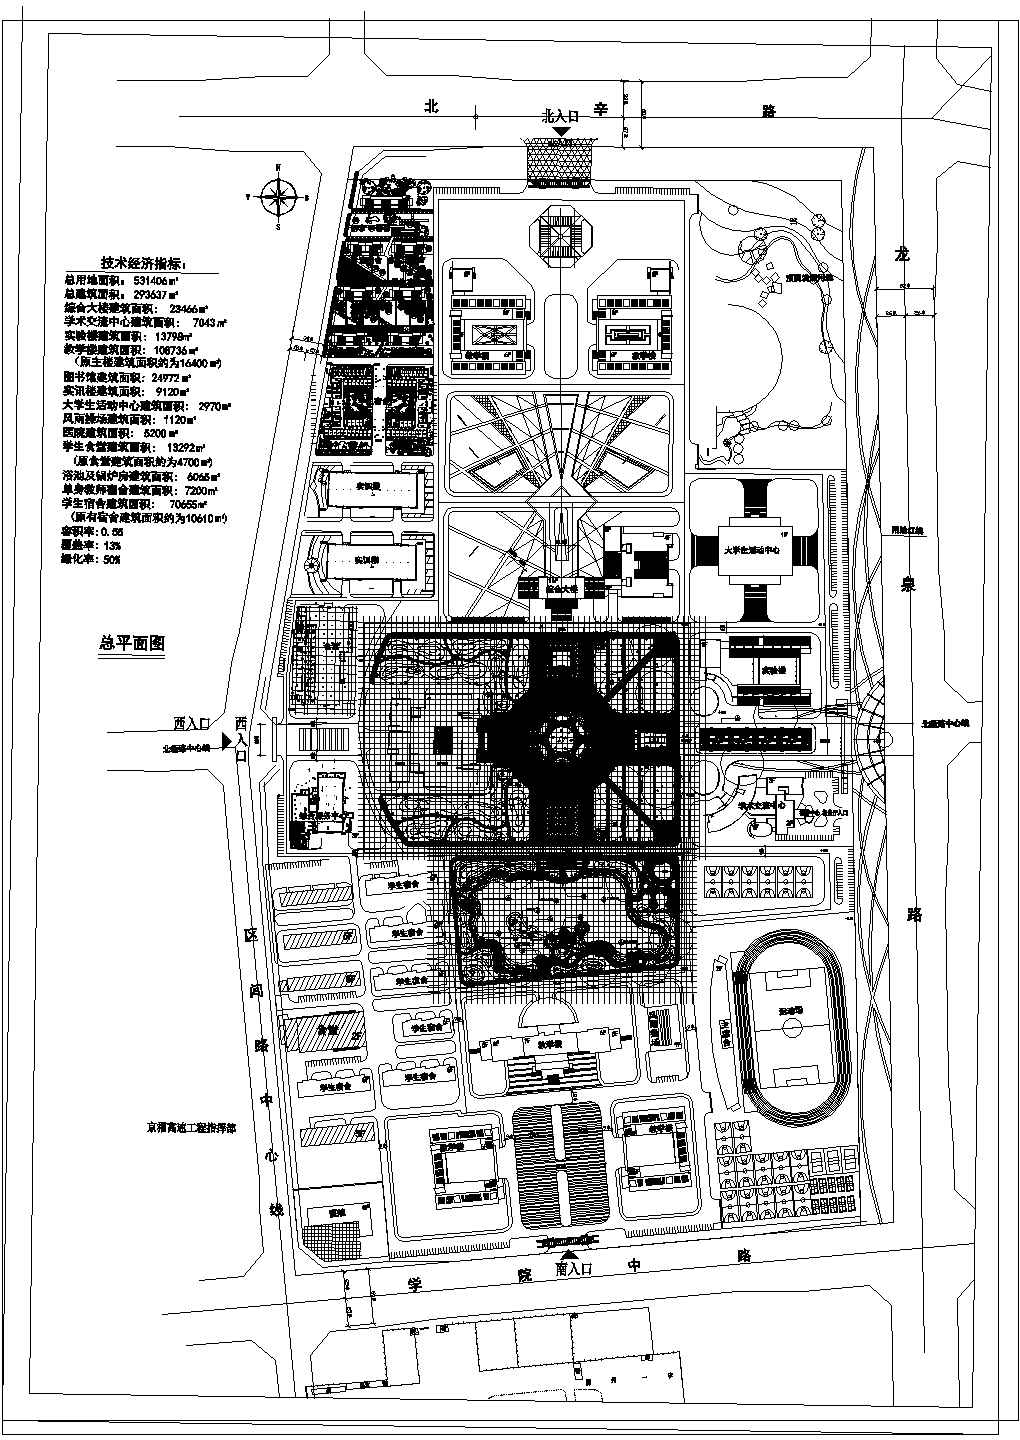 山东某学院园林景观总平面设计详细建筑施工图